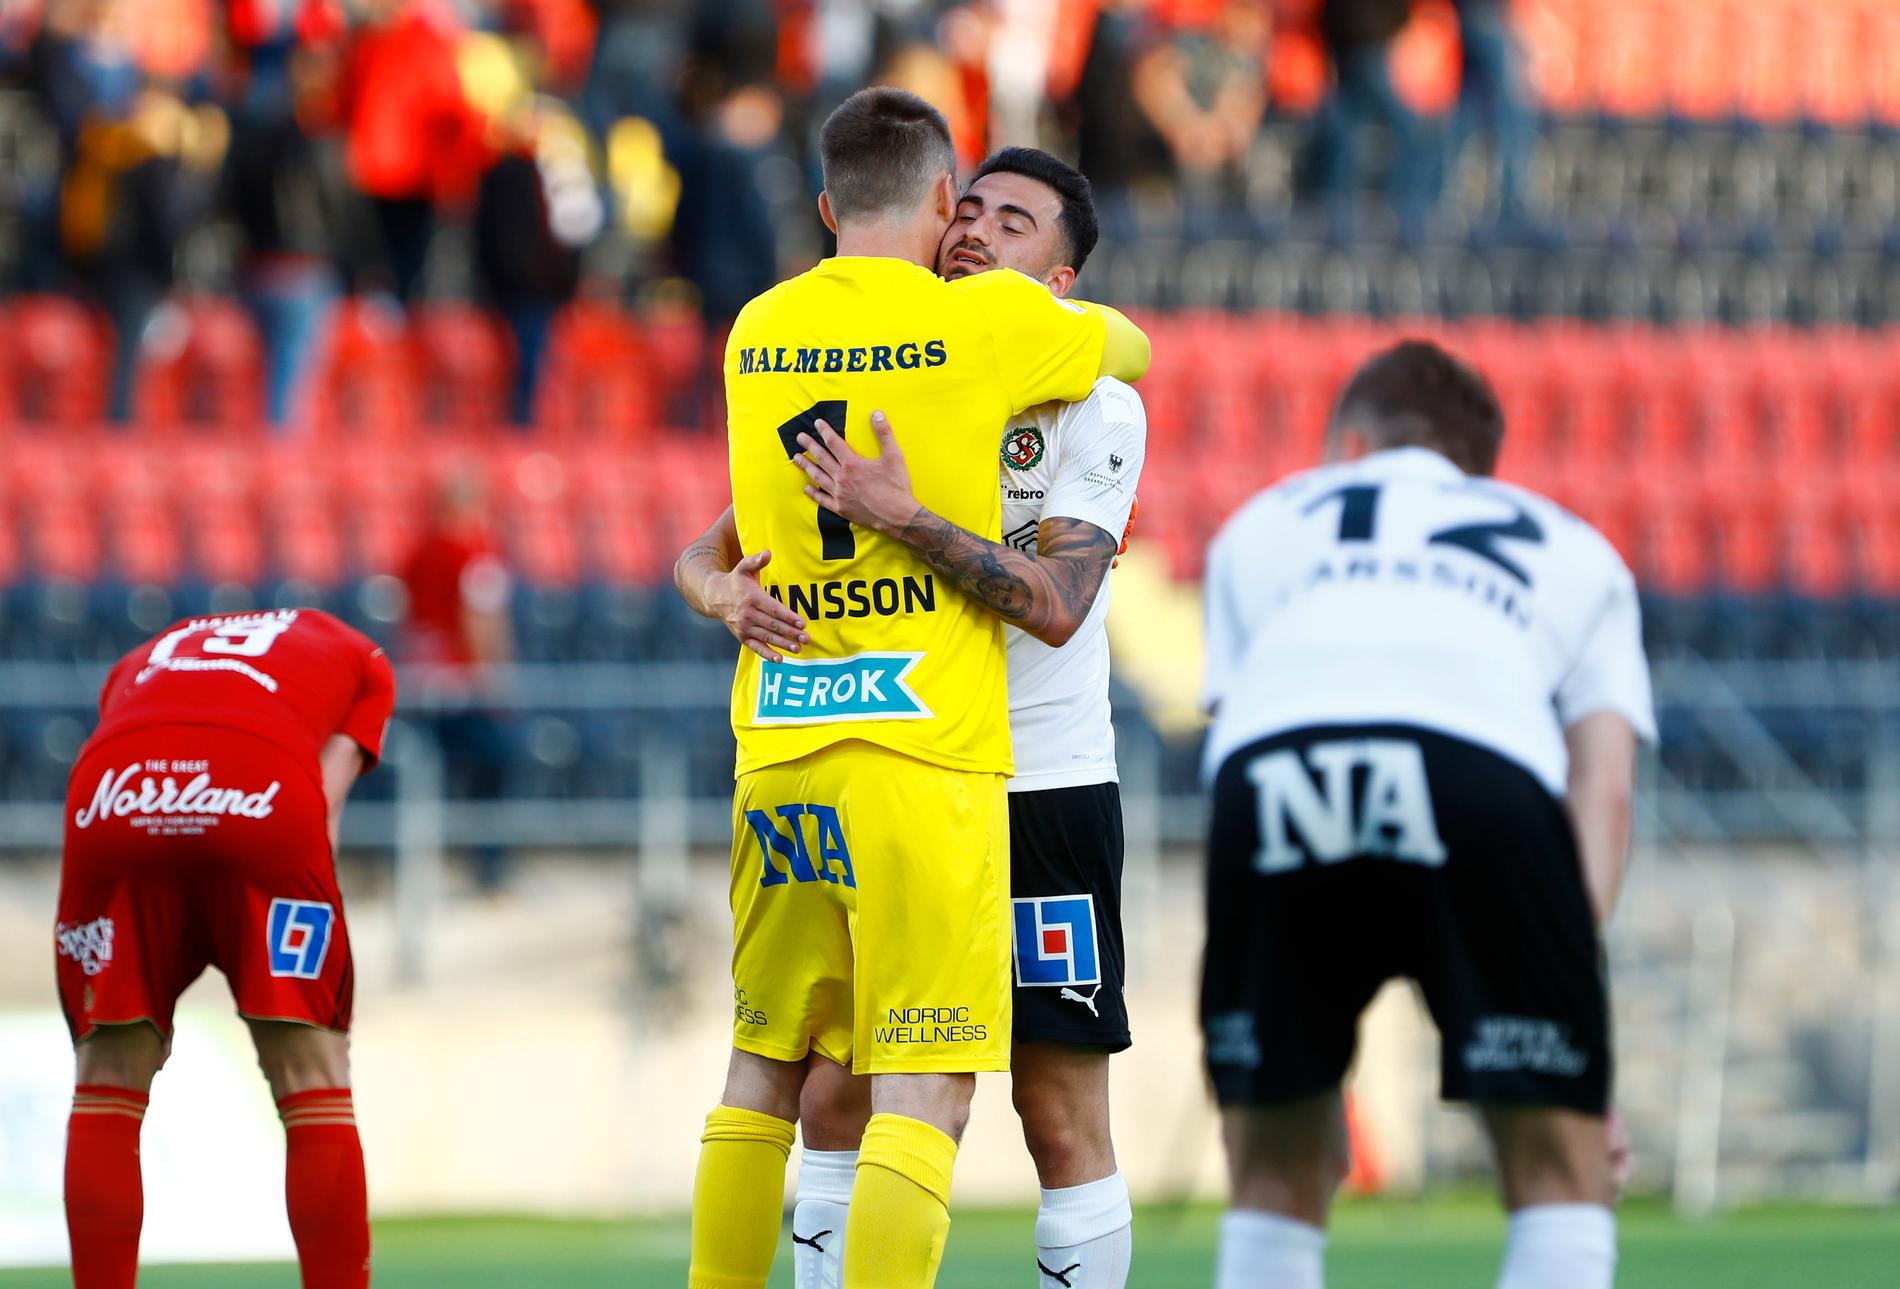 Örebros målvakt Oscar Jansson kramas om av Simon Amin efter slutsignalen.